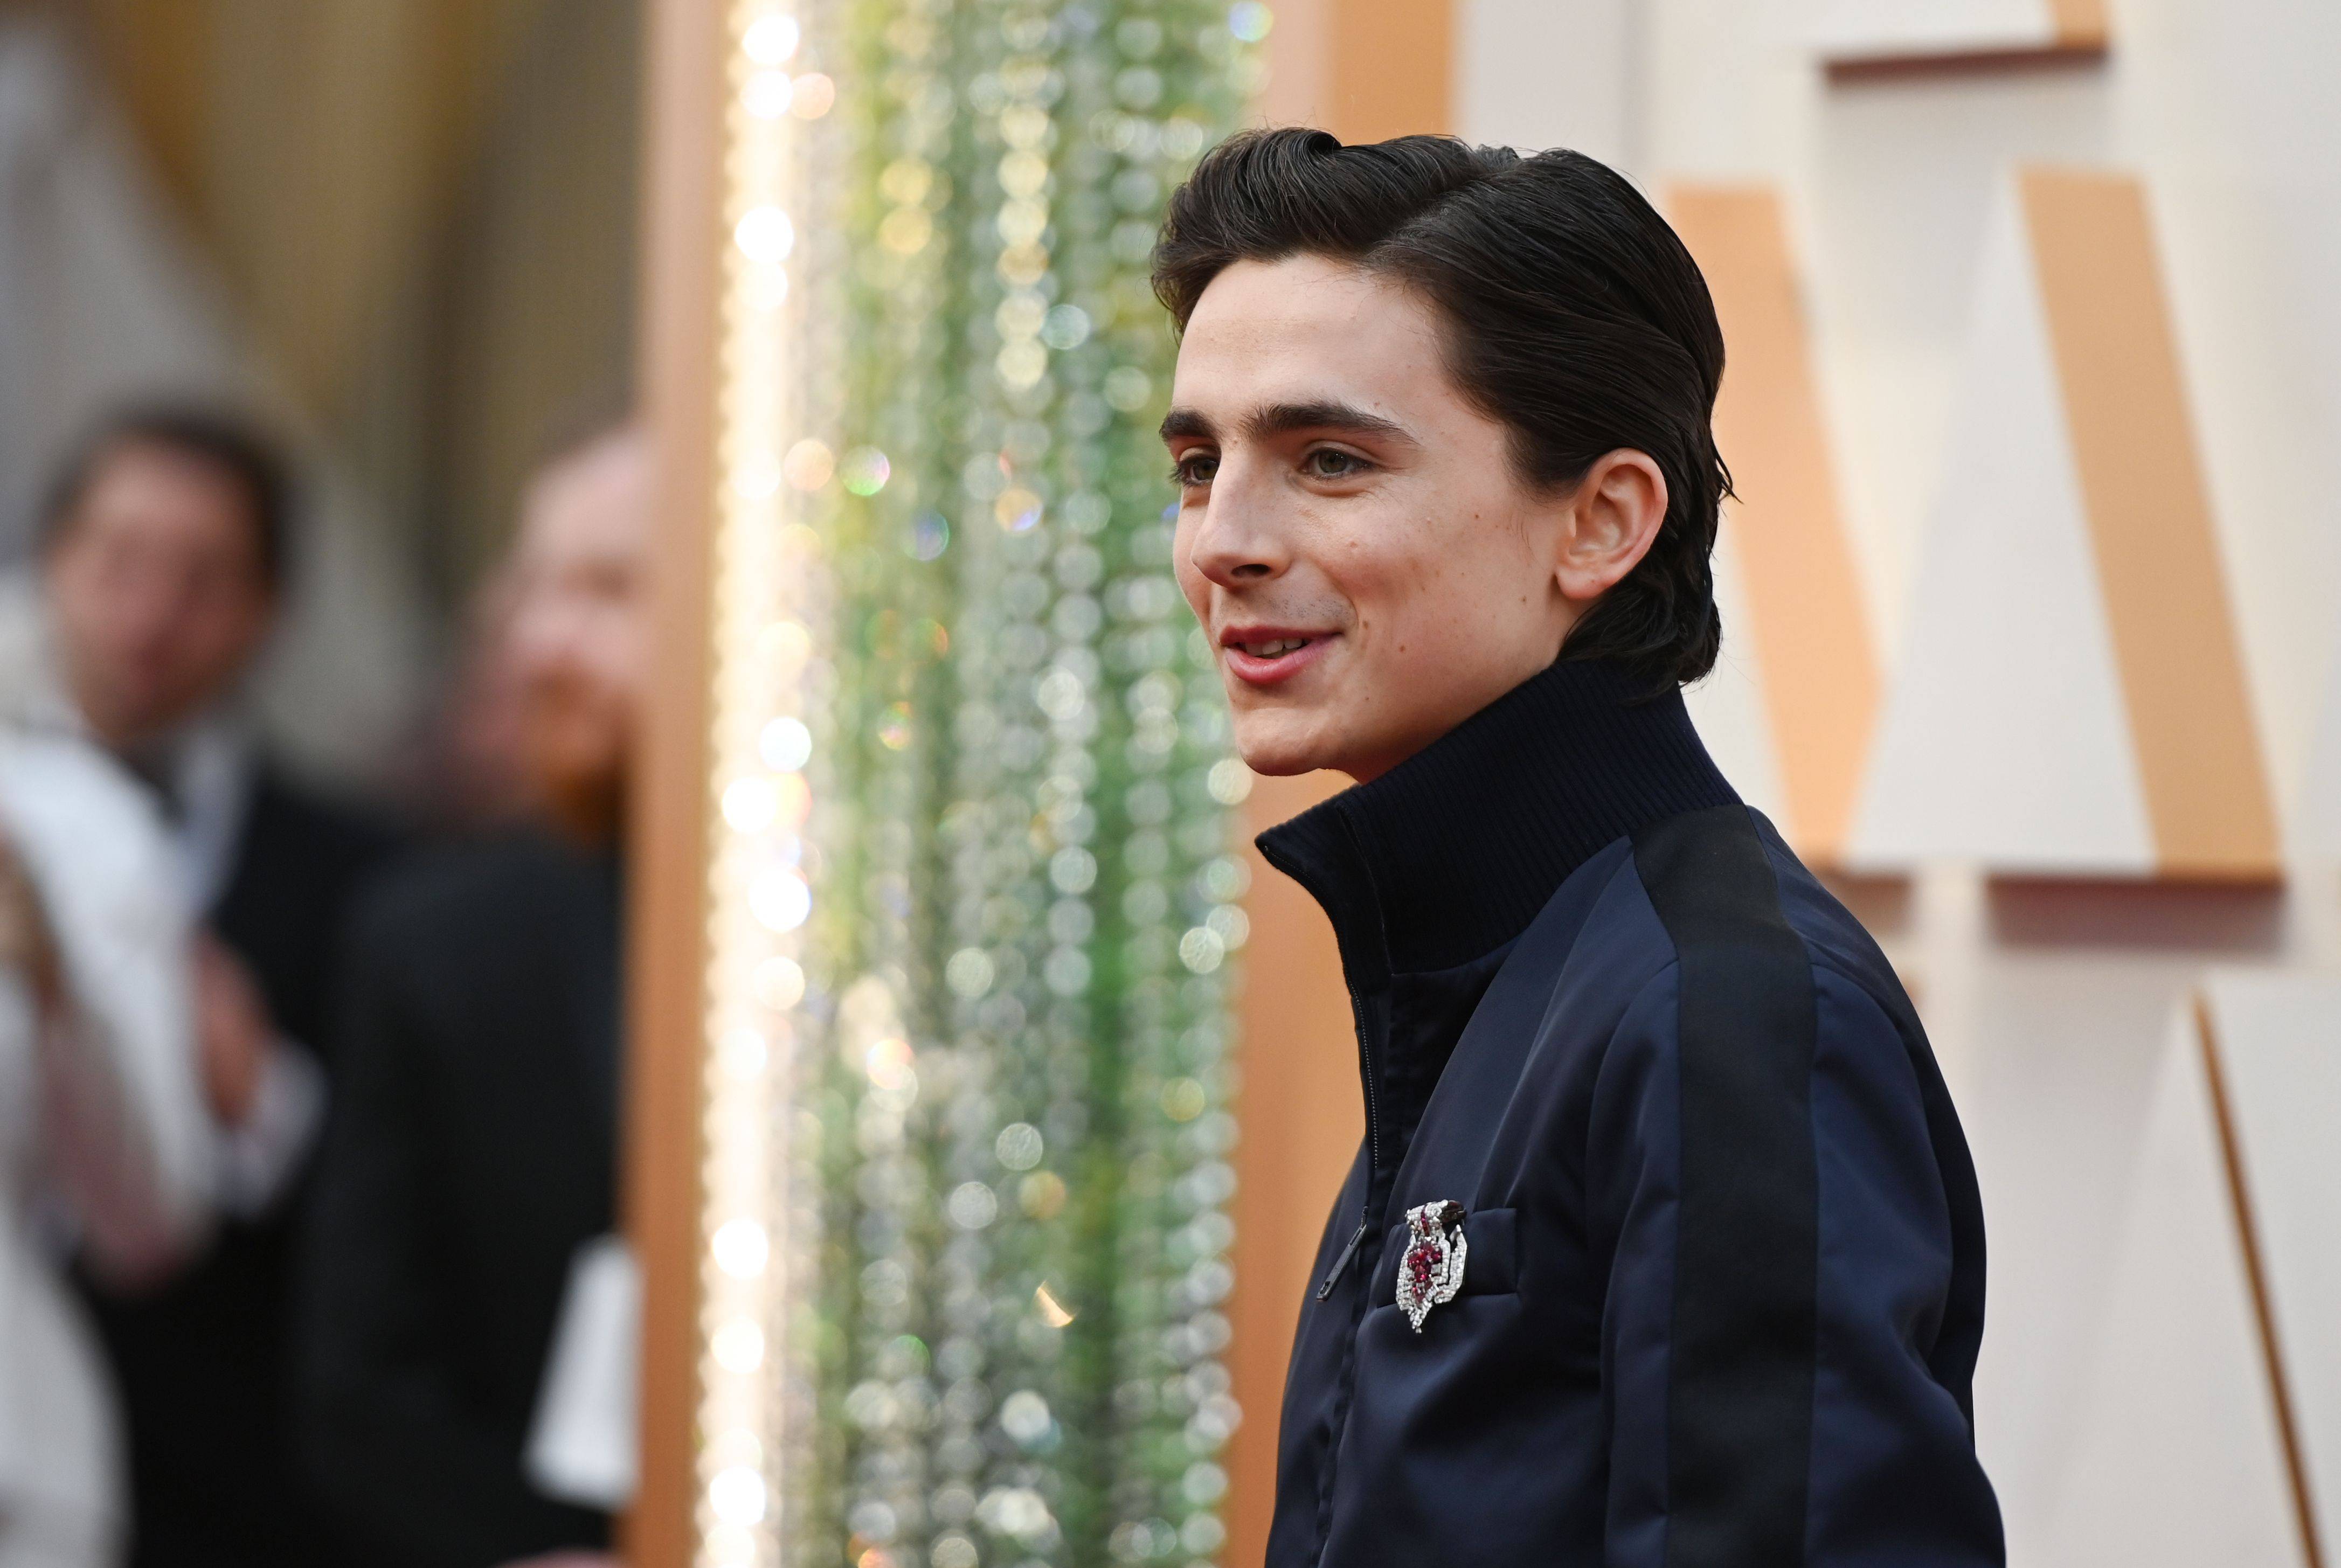 Timothée Chalamet's Oscars 2020 red carpet outfit divides fans